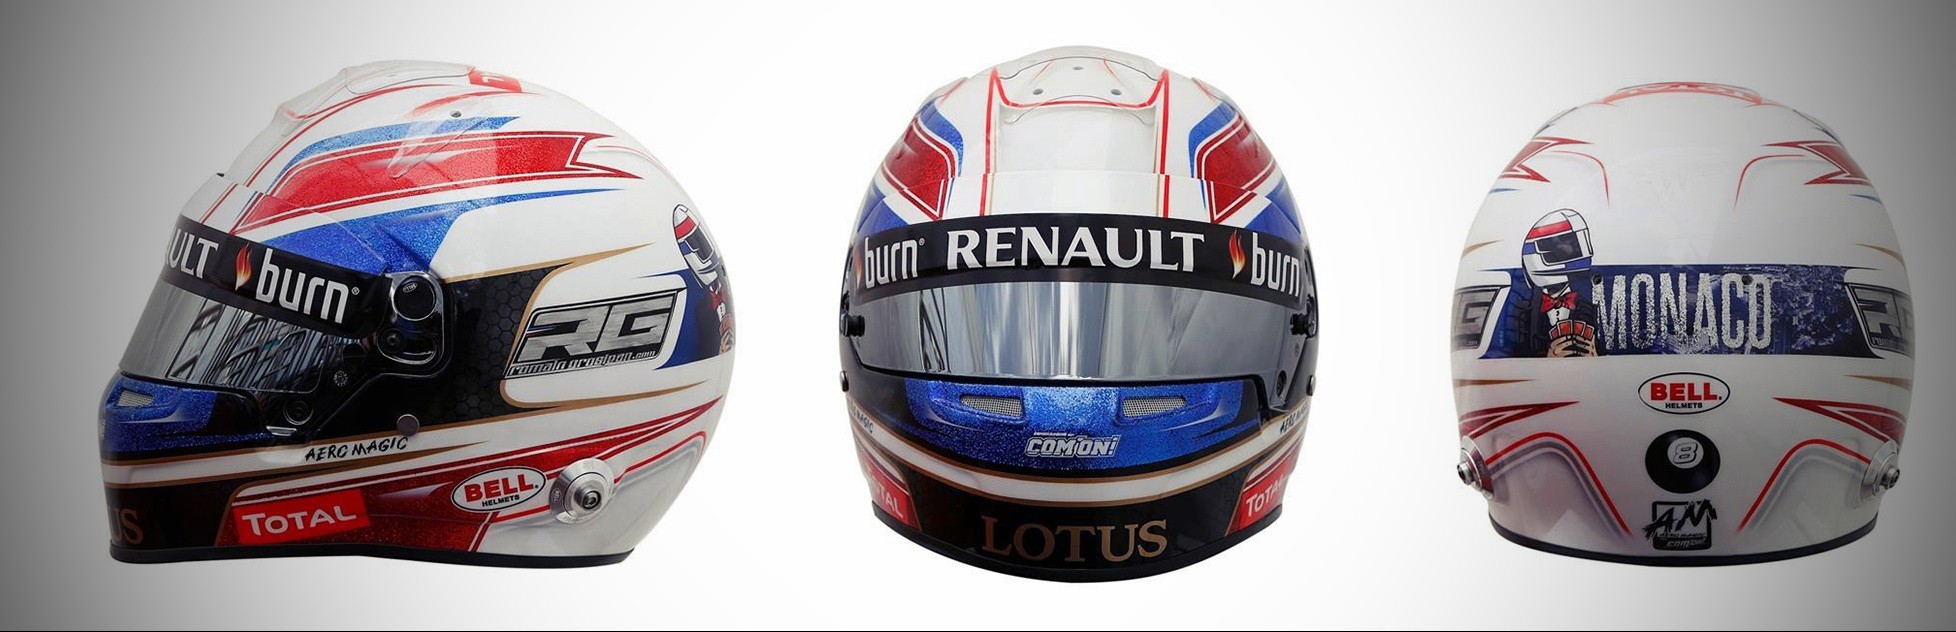 Шлем Романа Грожана на Гран-При Монако 2013 | 2013 Monaco Grand Prix helmet of Romain Grosjean